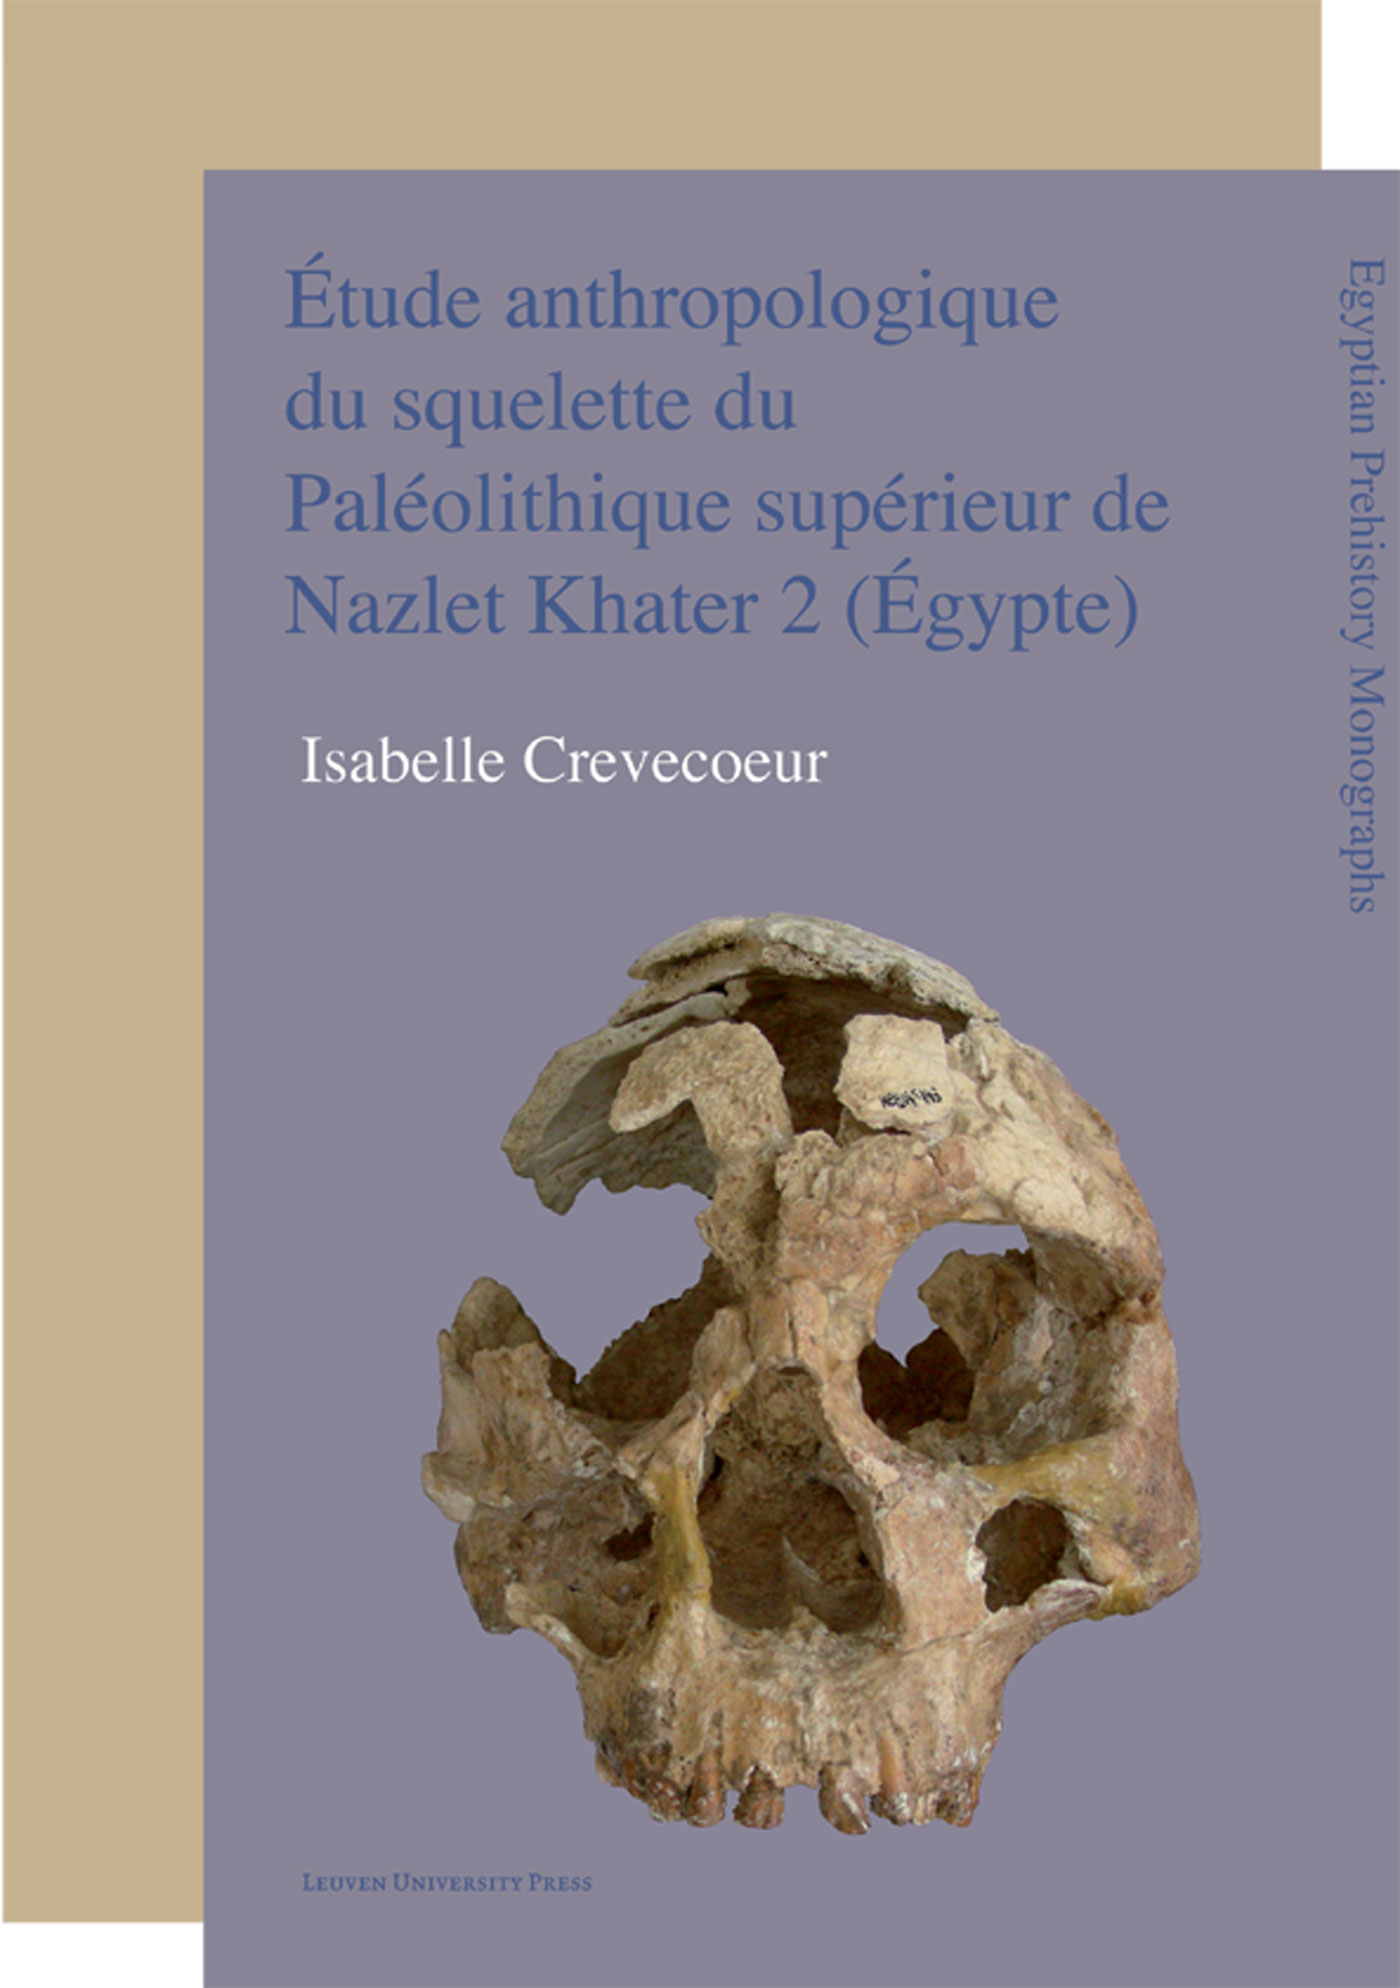 Étude anthropologique du squelette du Paléolithique supérieur de Nazlet Khater 2 (Égypte)